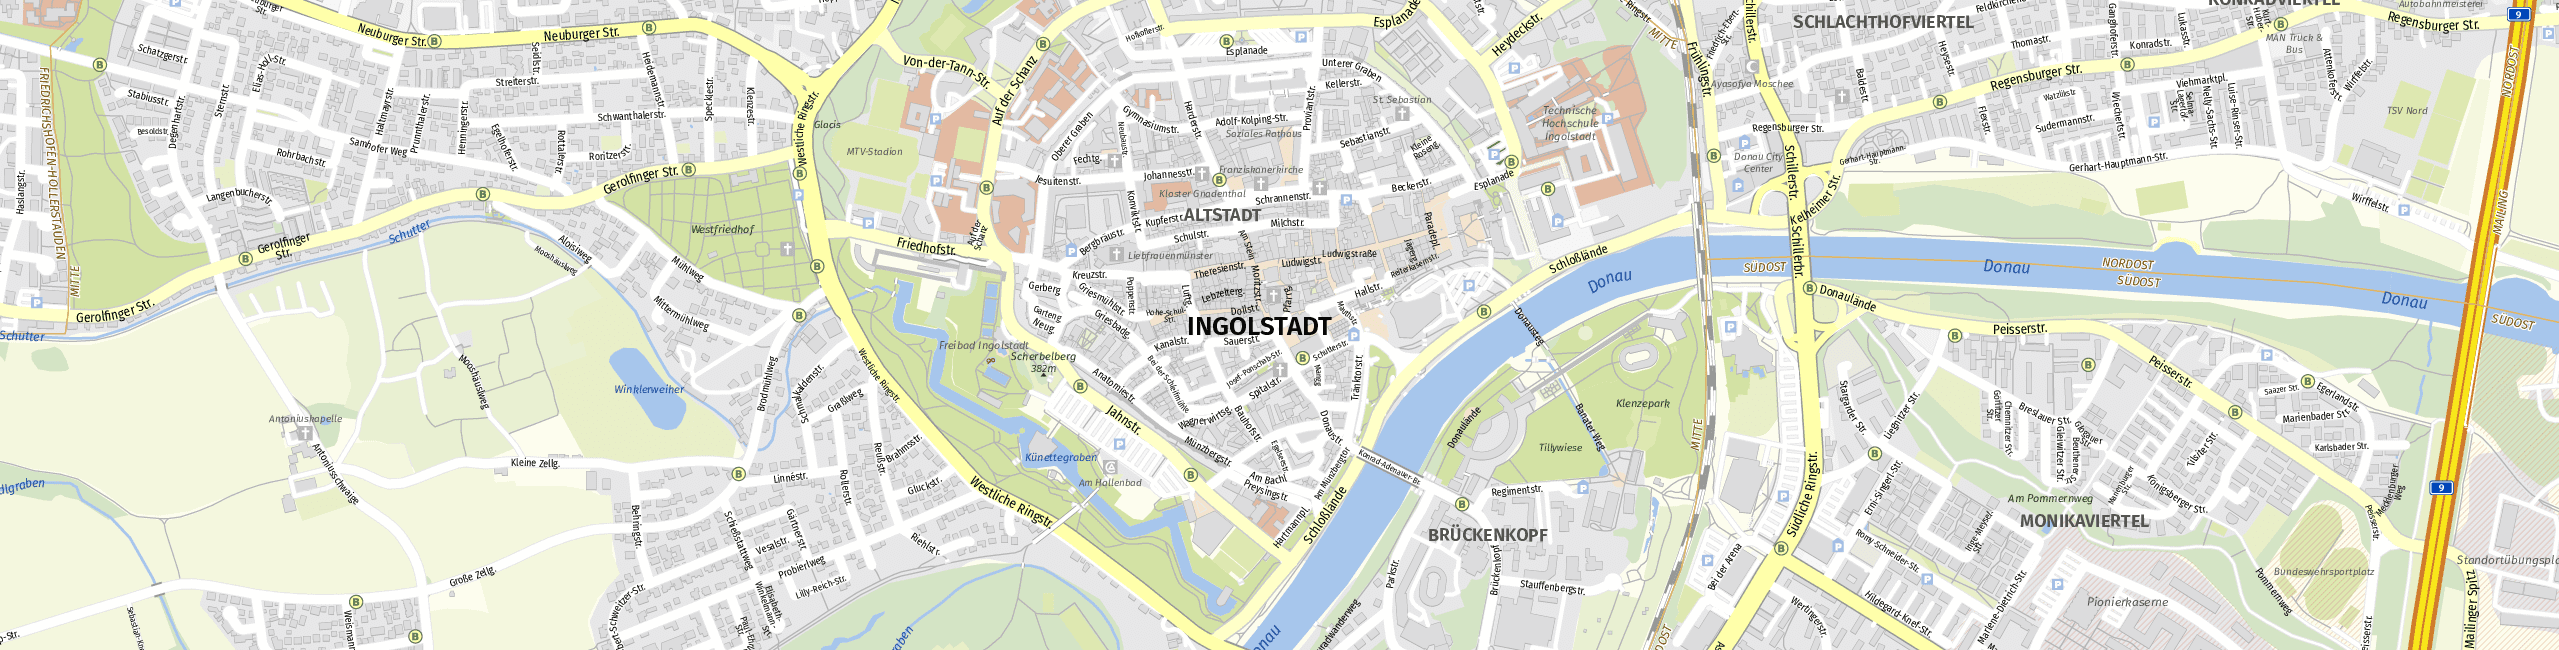 Stadtplan Ingolstadt zum Downloaden.